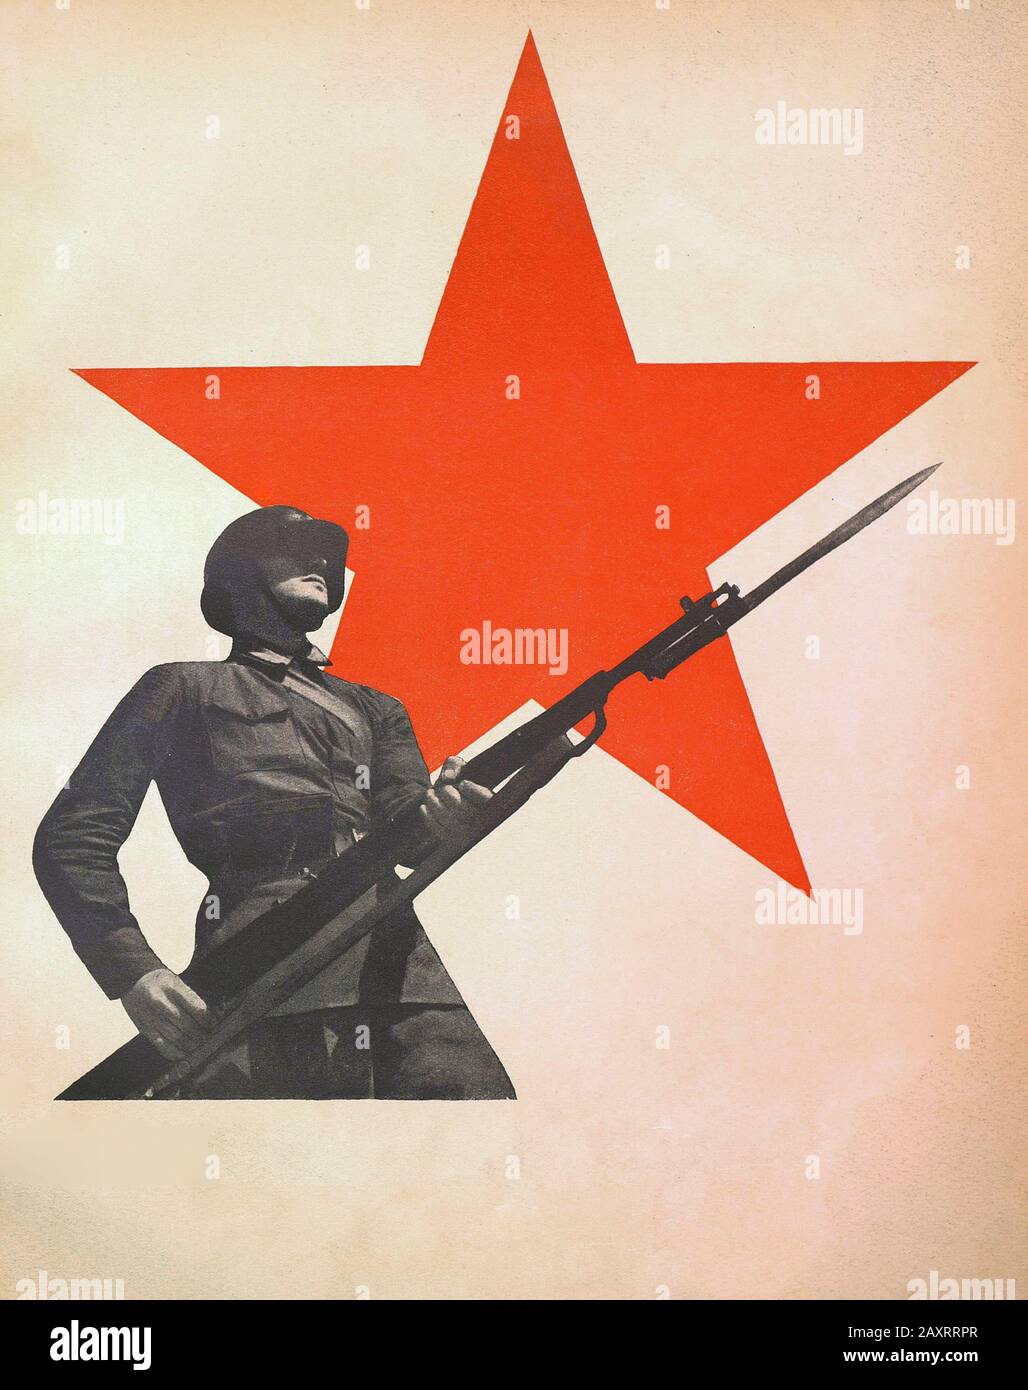 Rote Armee in den 1930er Jahren. Aus dem sowjetischen Propagandabuch von 1937. Sowjet Soldat vor dem Hintergrund eines roten Sterns. Stockfoto